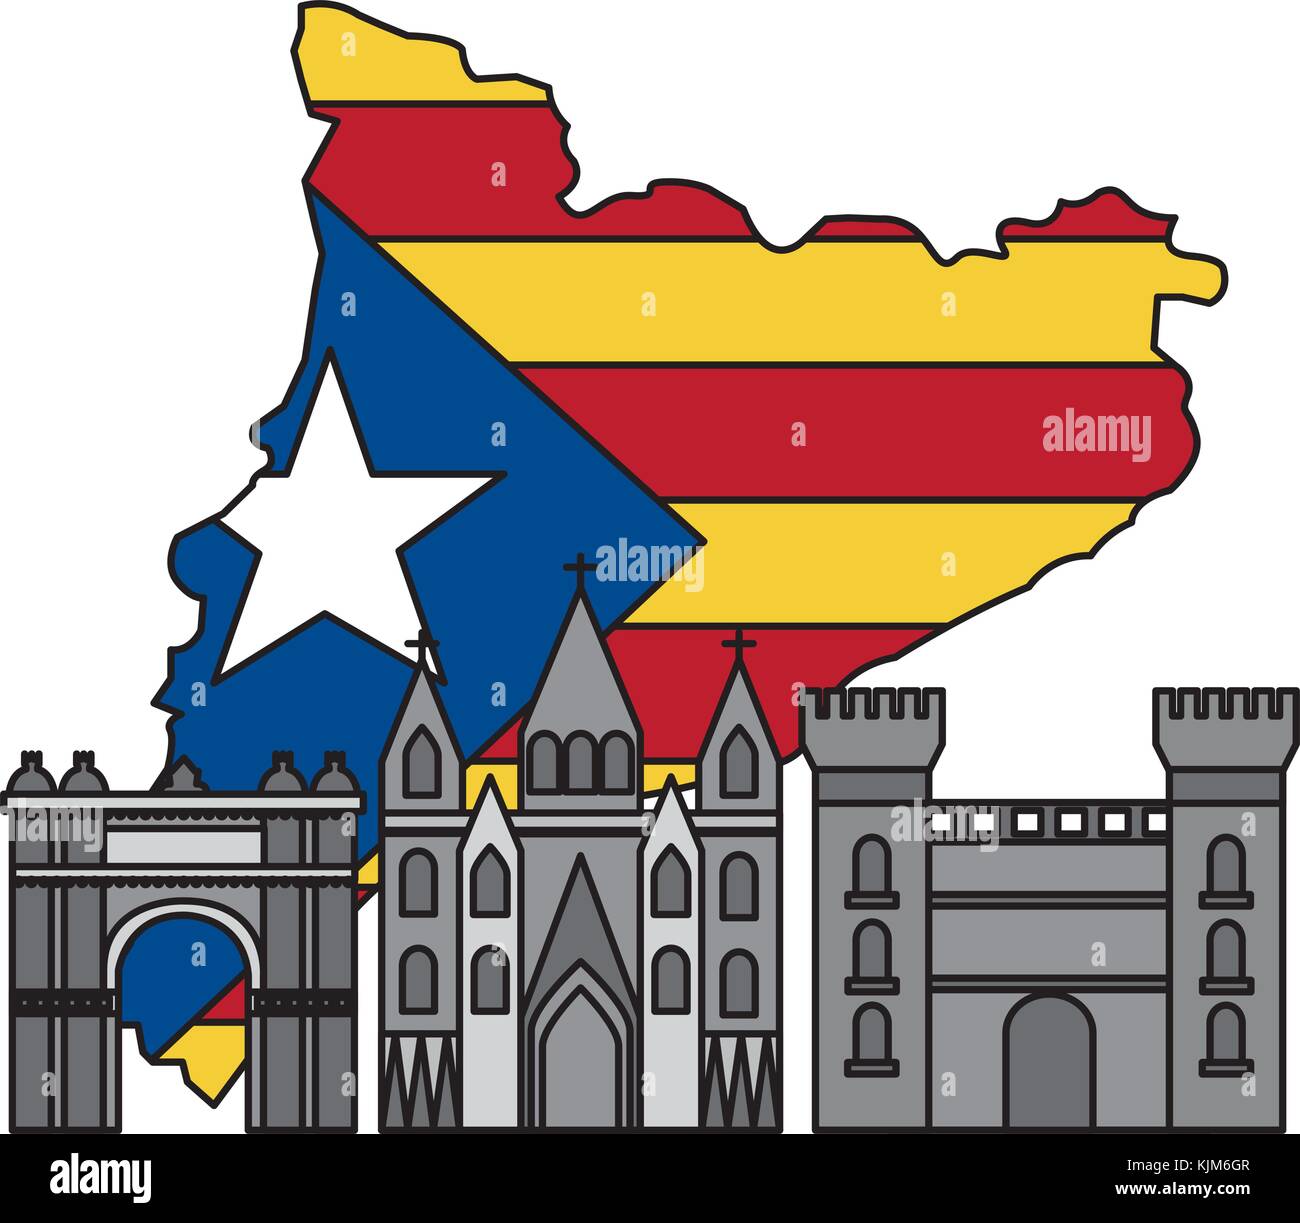 Bandiera di catalunya e paese delineare con punti di riferimento immagine dell'icona Illustrazione Vettoriale